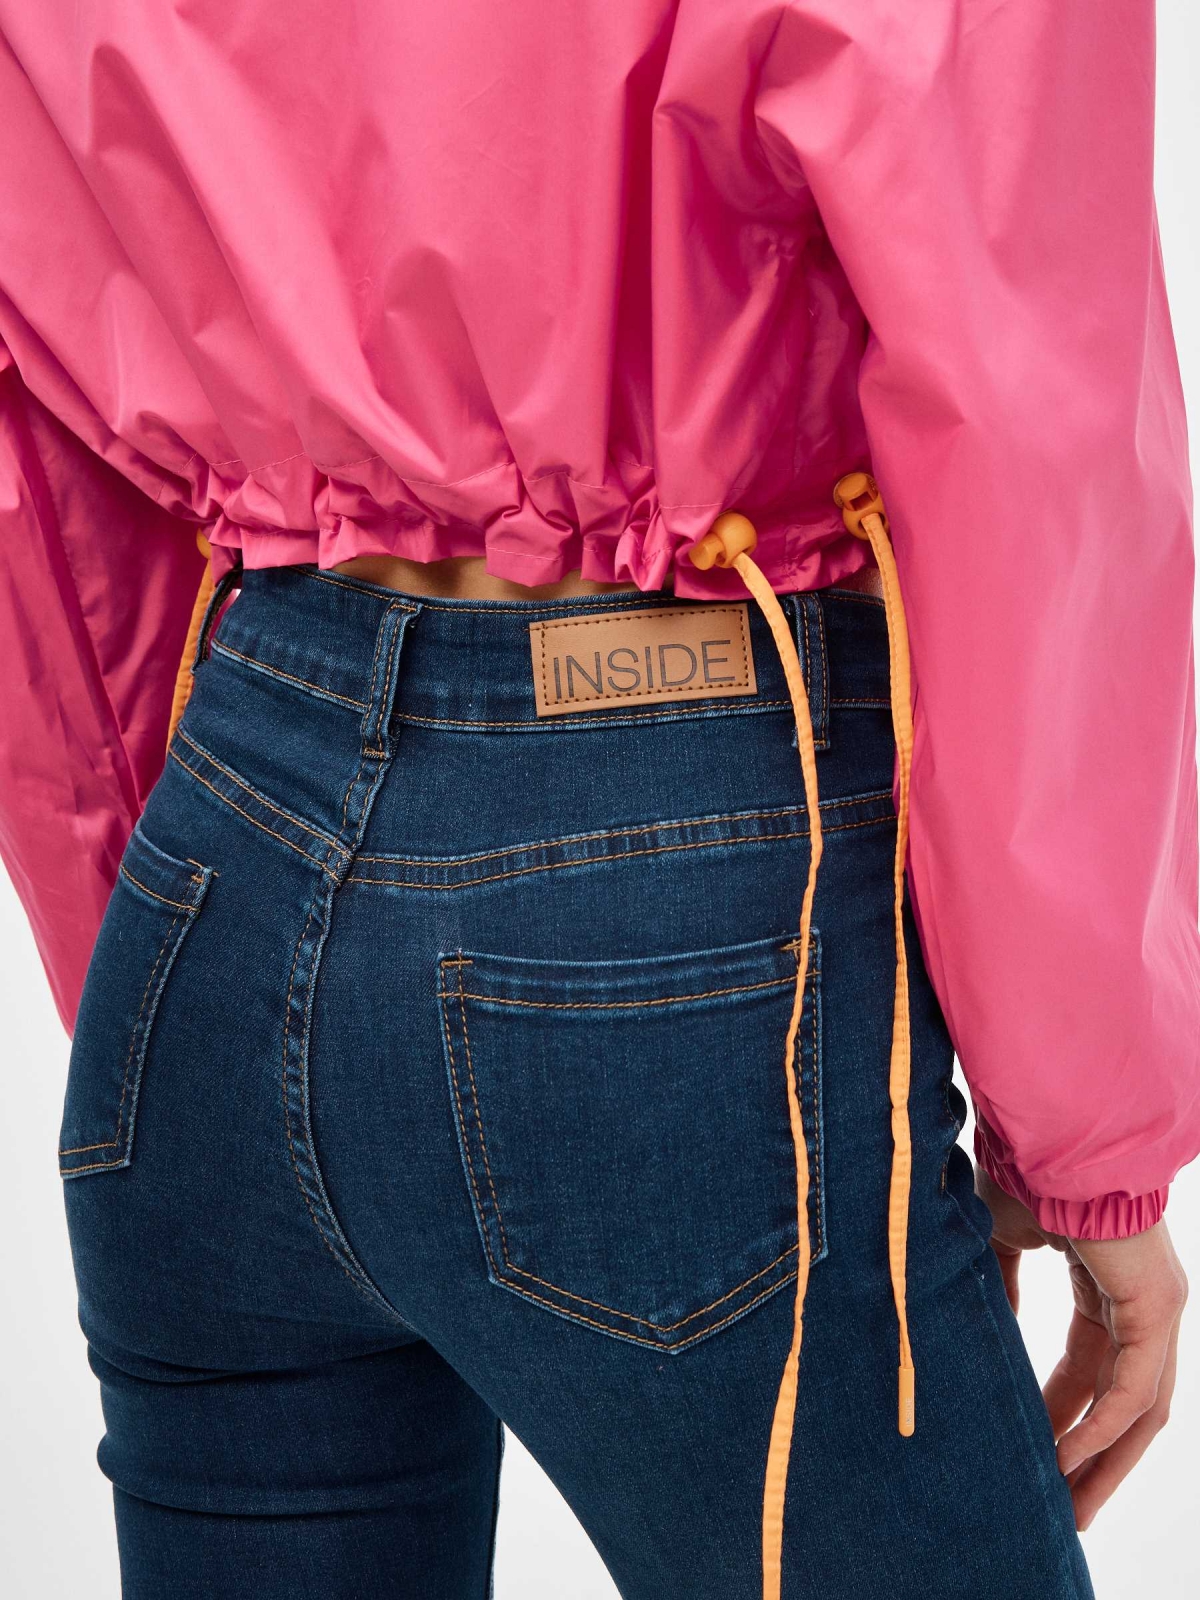 Fuchsia nylon jacket magenta pink detail view